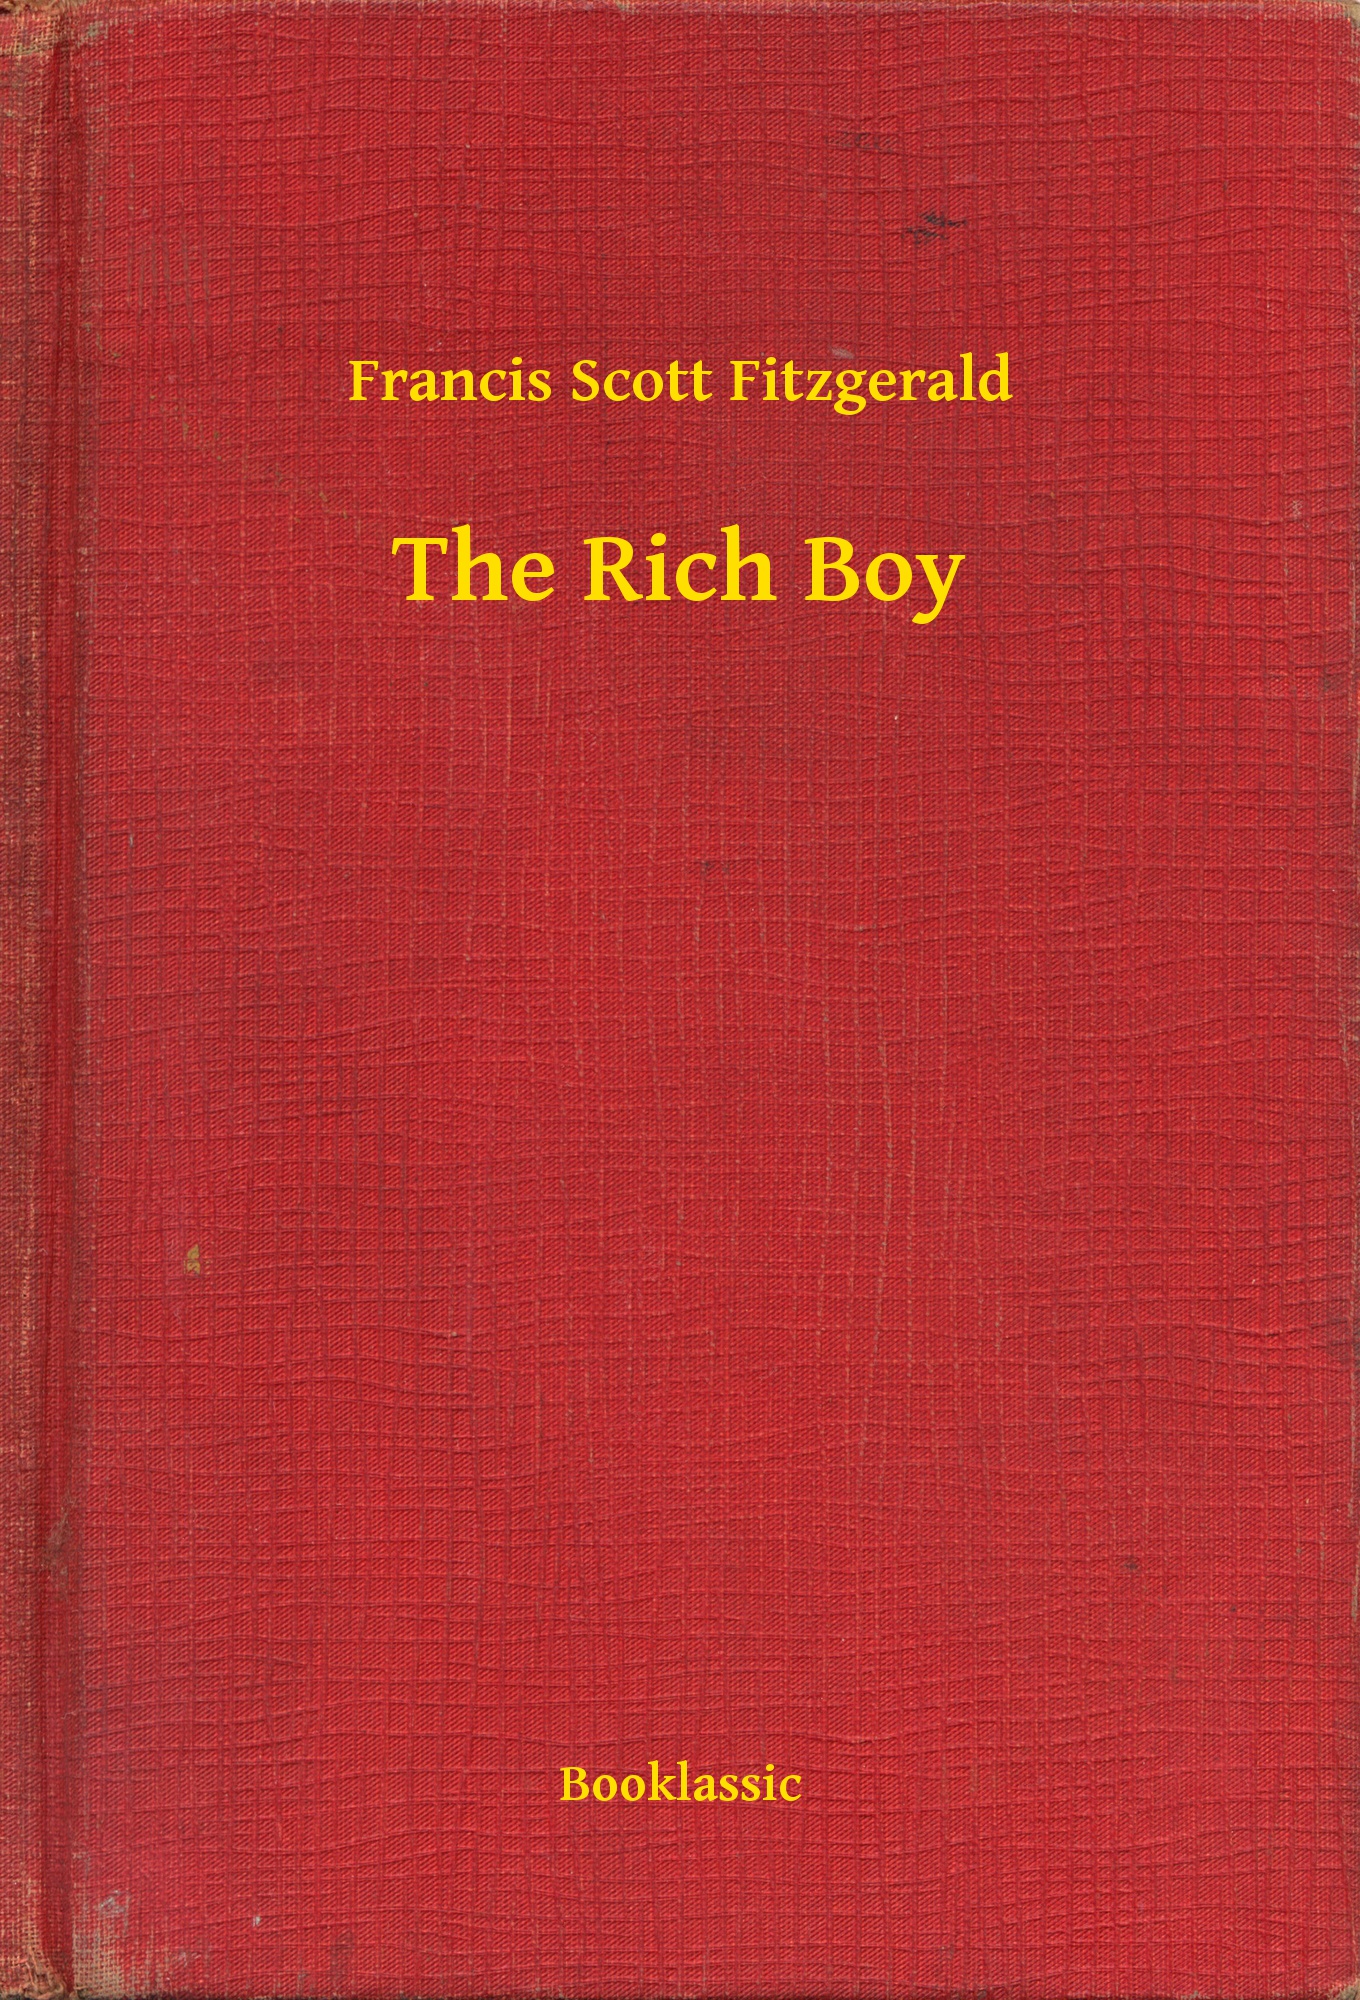 The Rich Boy